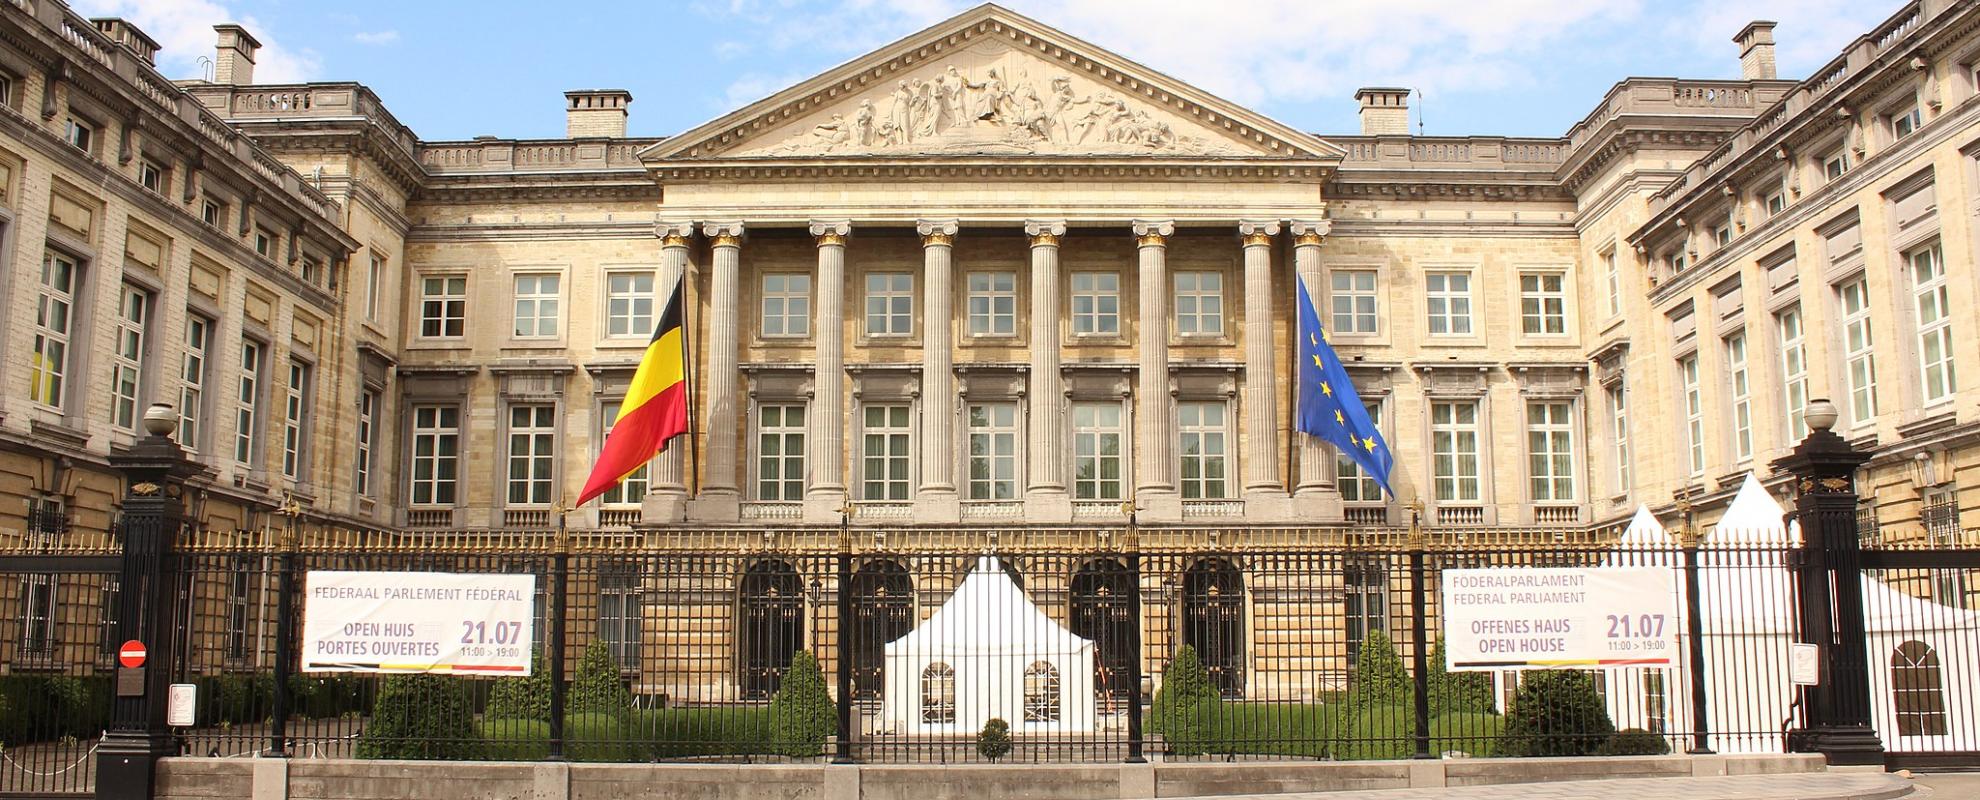 Federaal parlement van België in Brussel